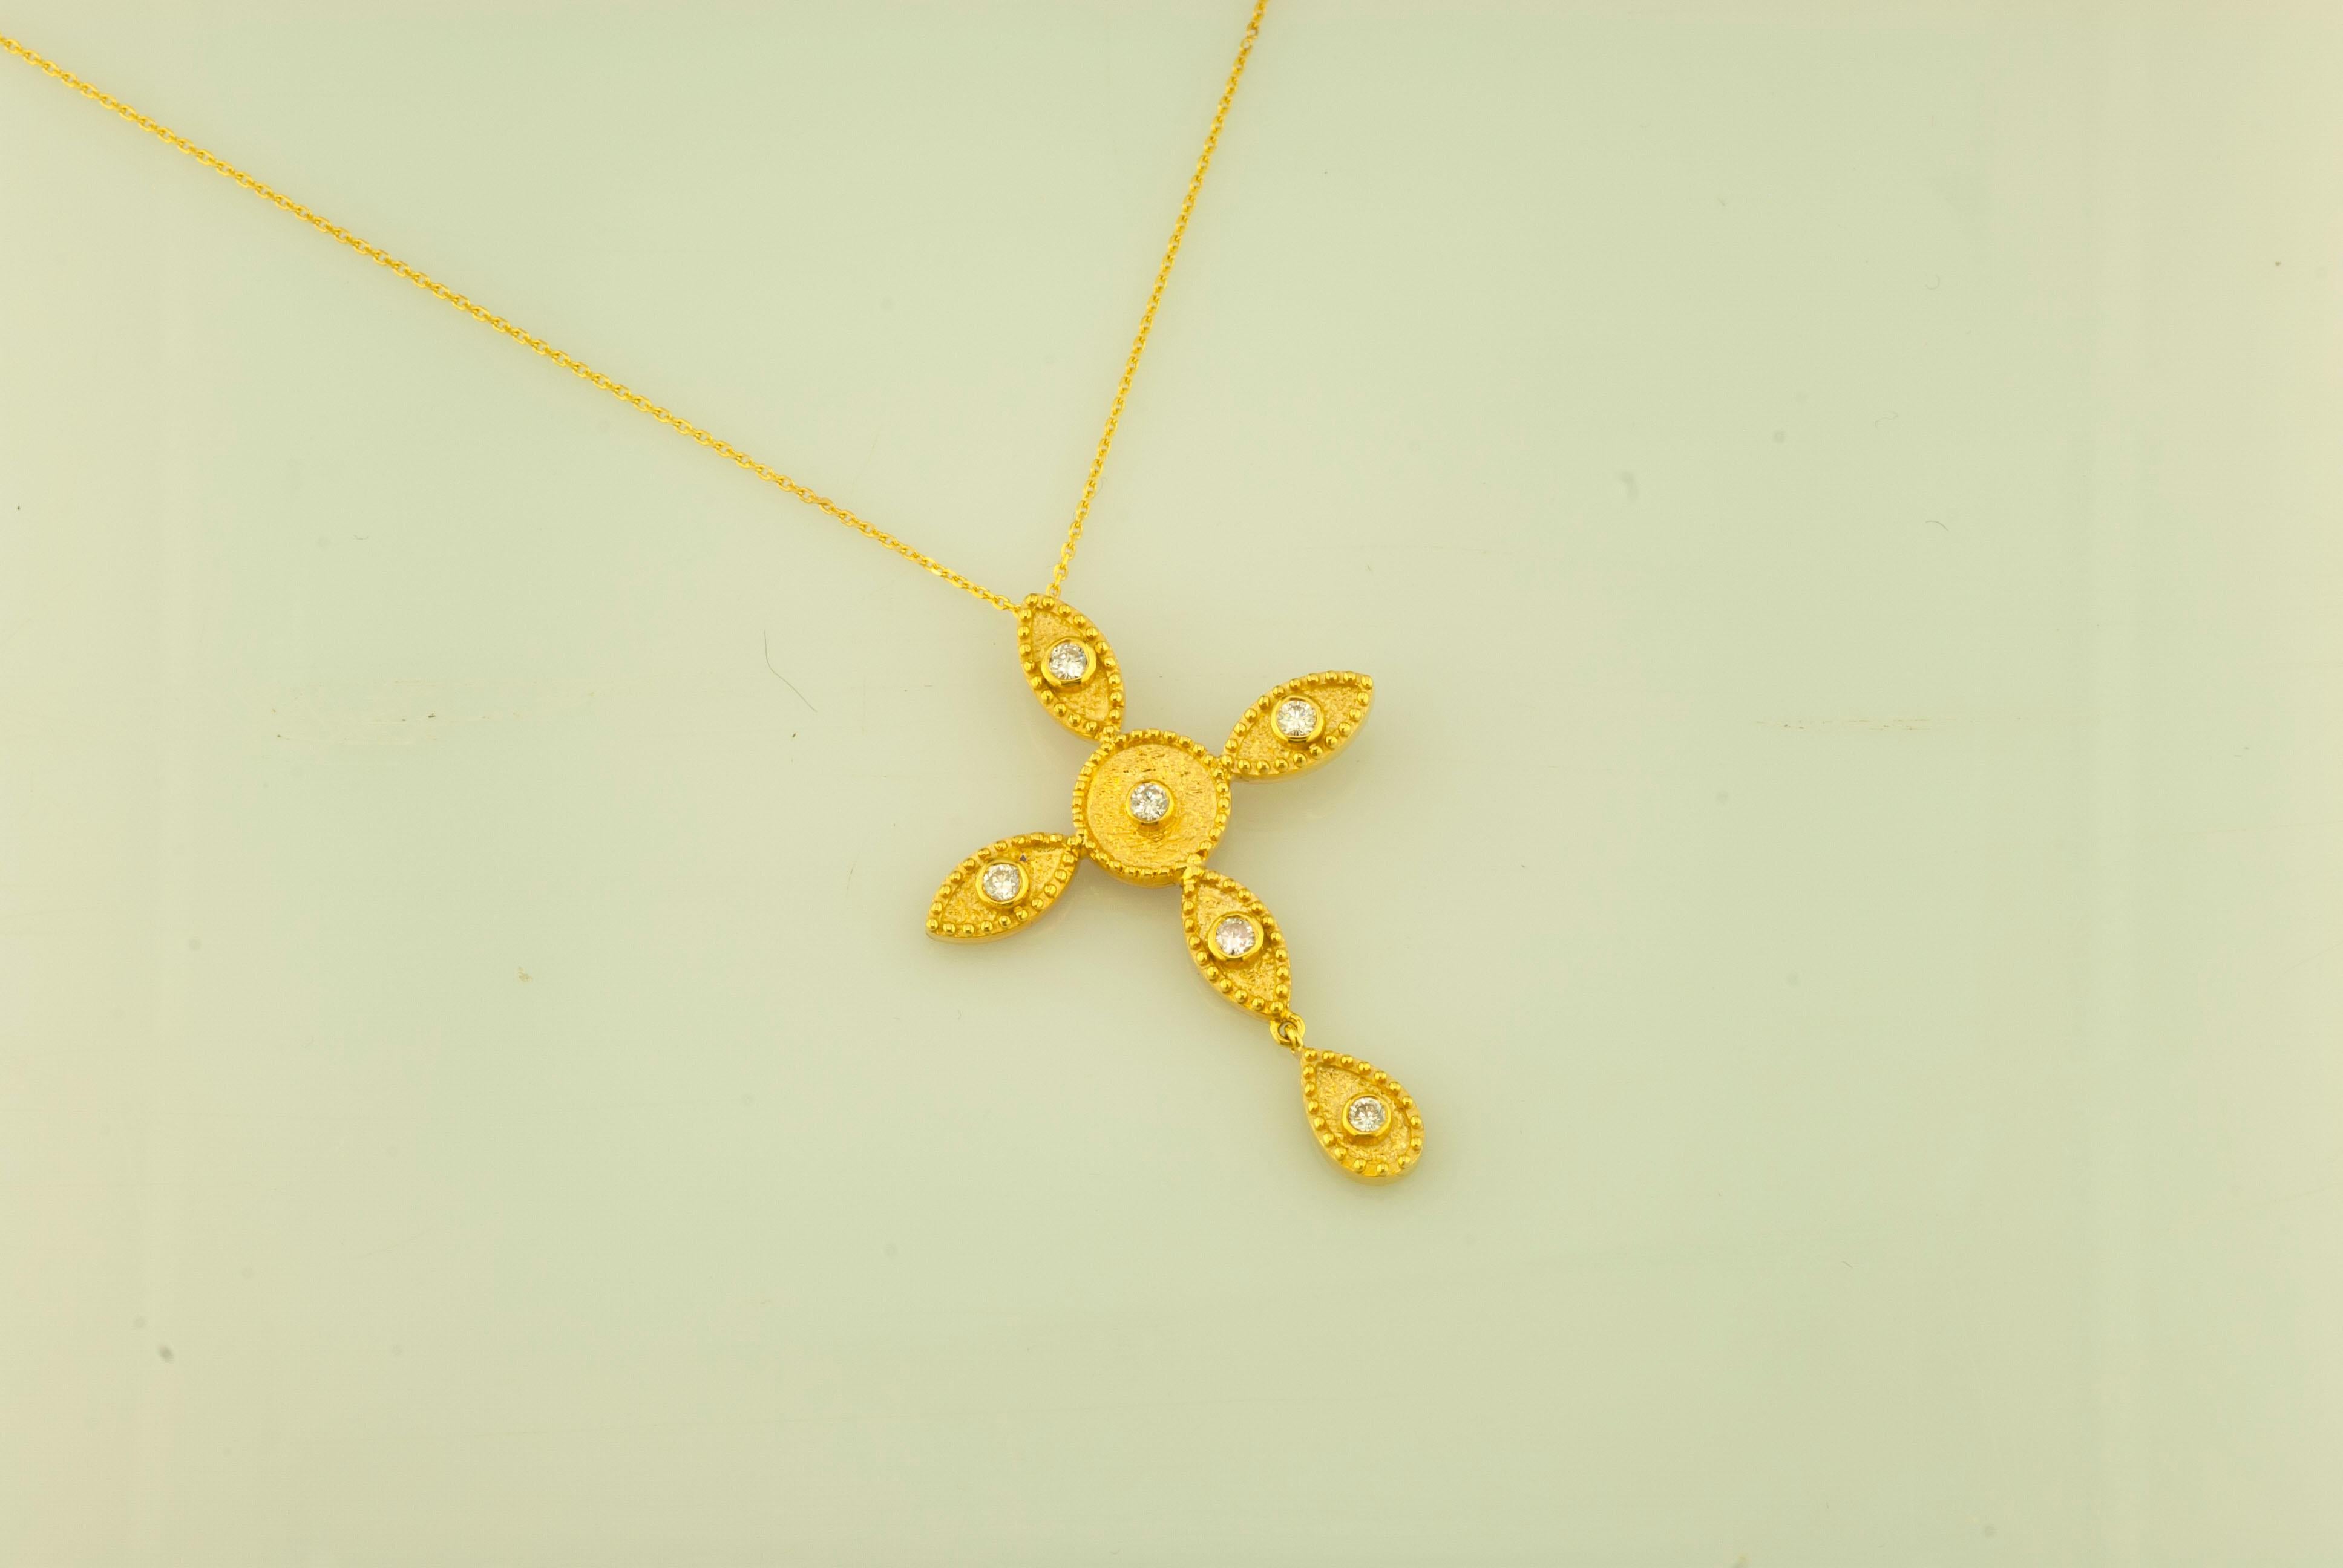 Ce long collier et cette chaîne en or 18 carats de S.Georgios, en forme de marquise, sont faits à la main avec un travail de granulation de style byzantin décoré au microscope et sont finis avec un aspect de fond velouté unique. Ce magnifique